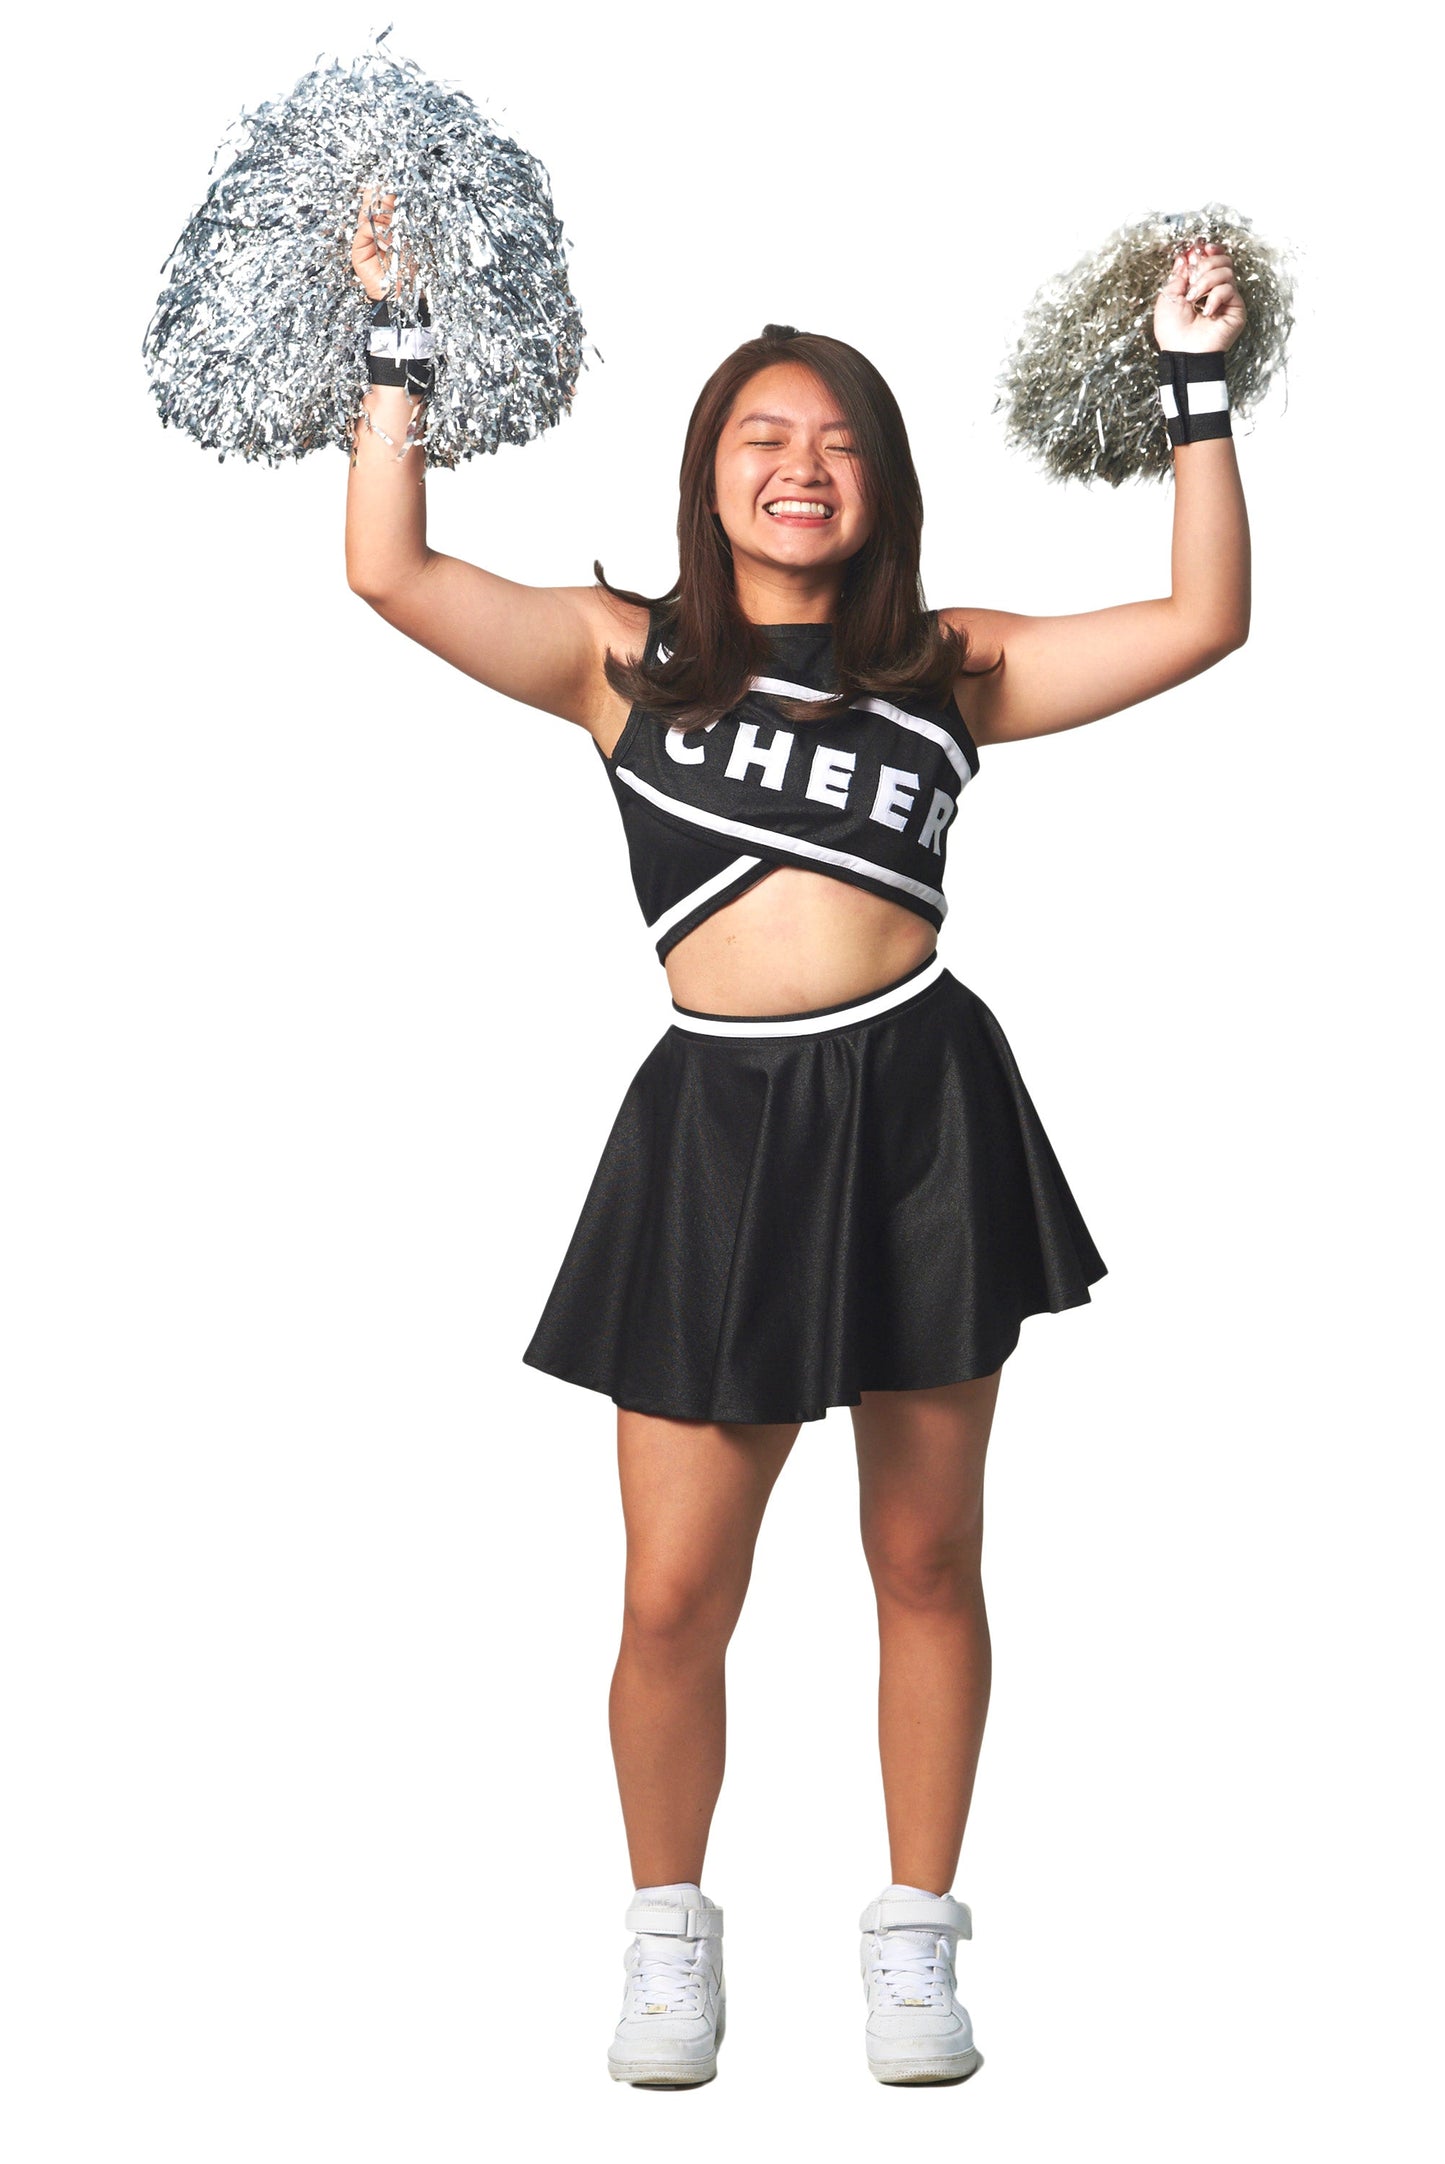 Cheerleader Female N01